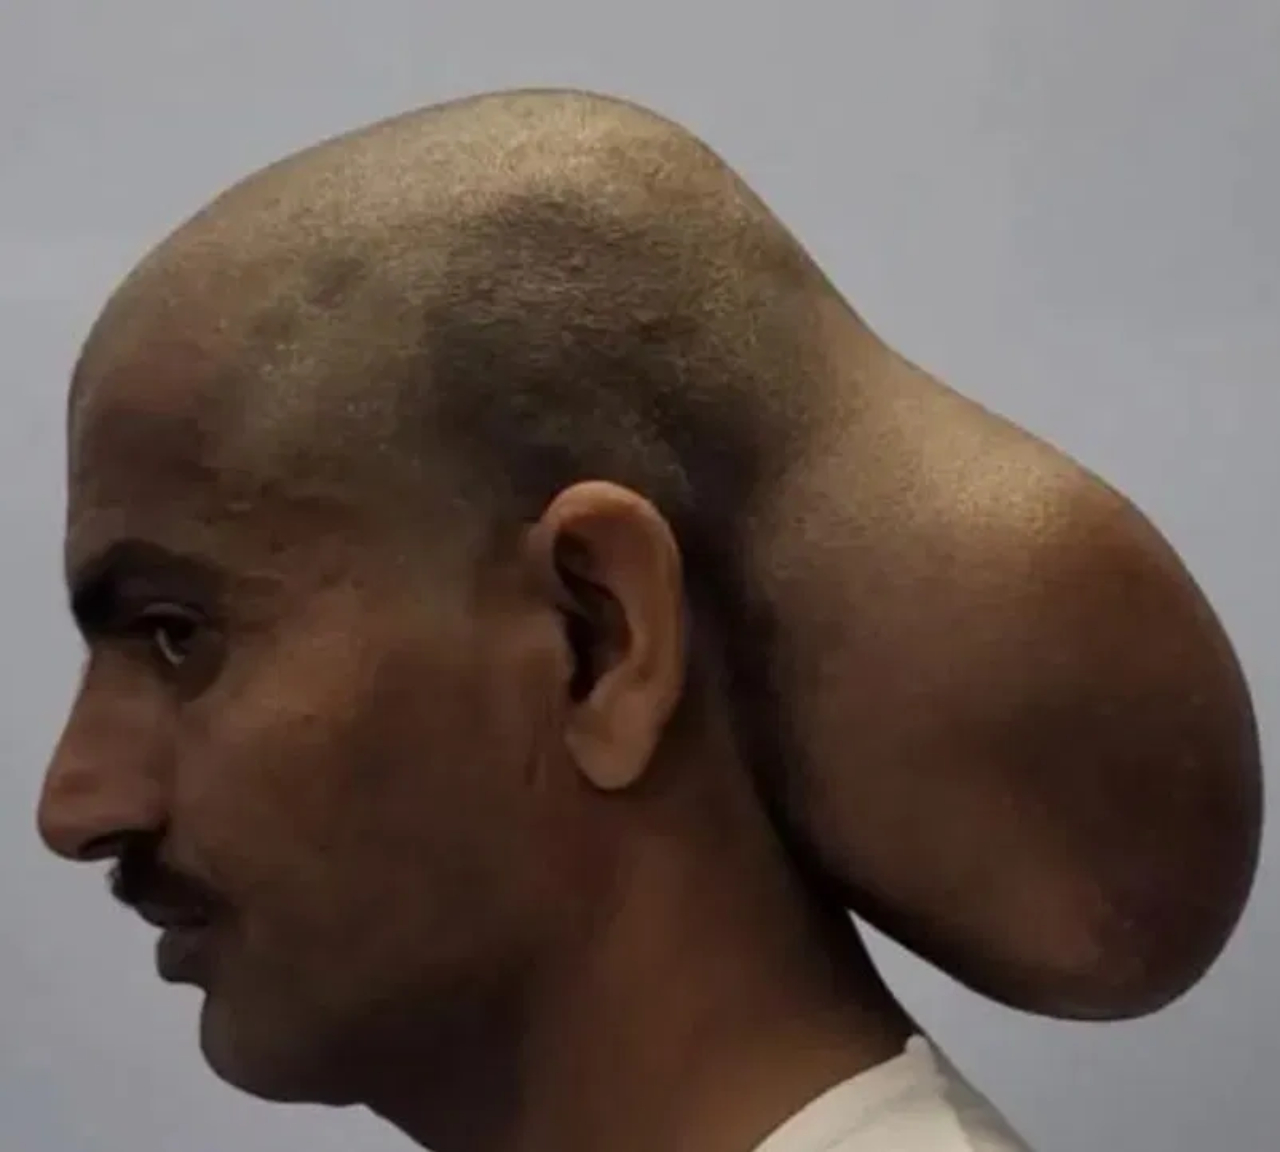 اكتشاف طبيّ مدهش: رجل هندي يعيش 15 عامًا مع ورم عملاق يشبه رأسًا ثانيًا